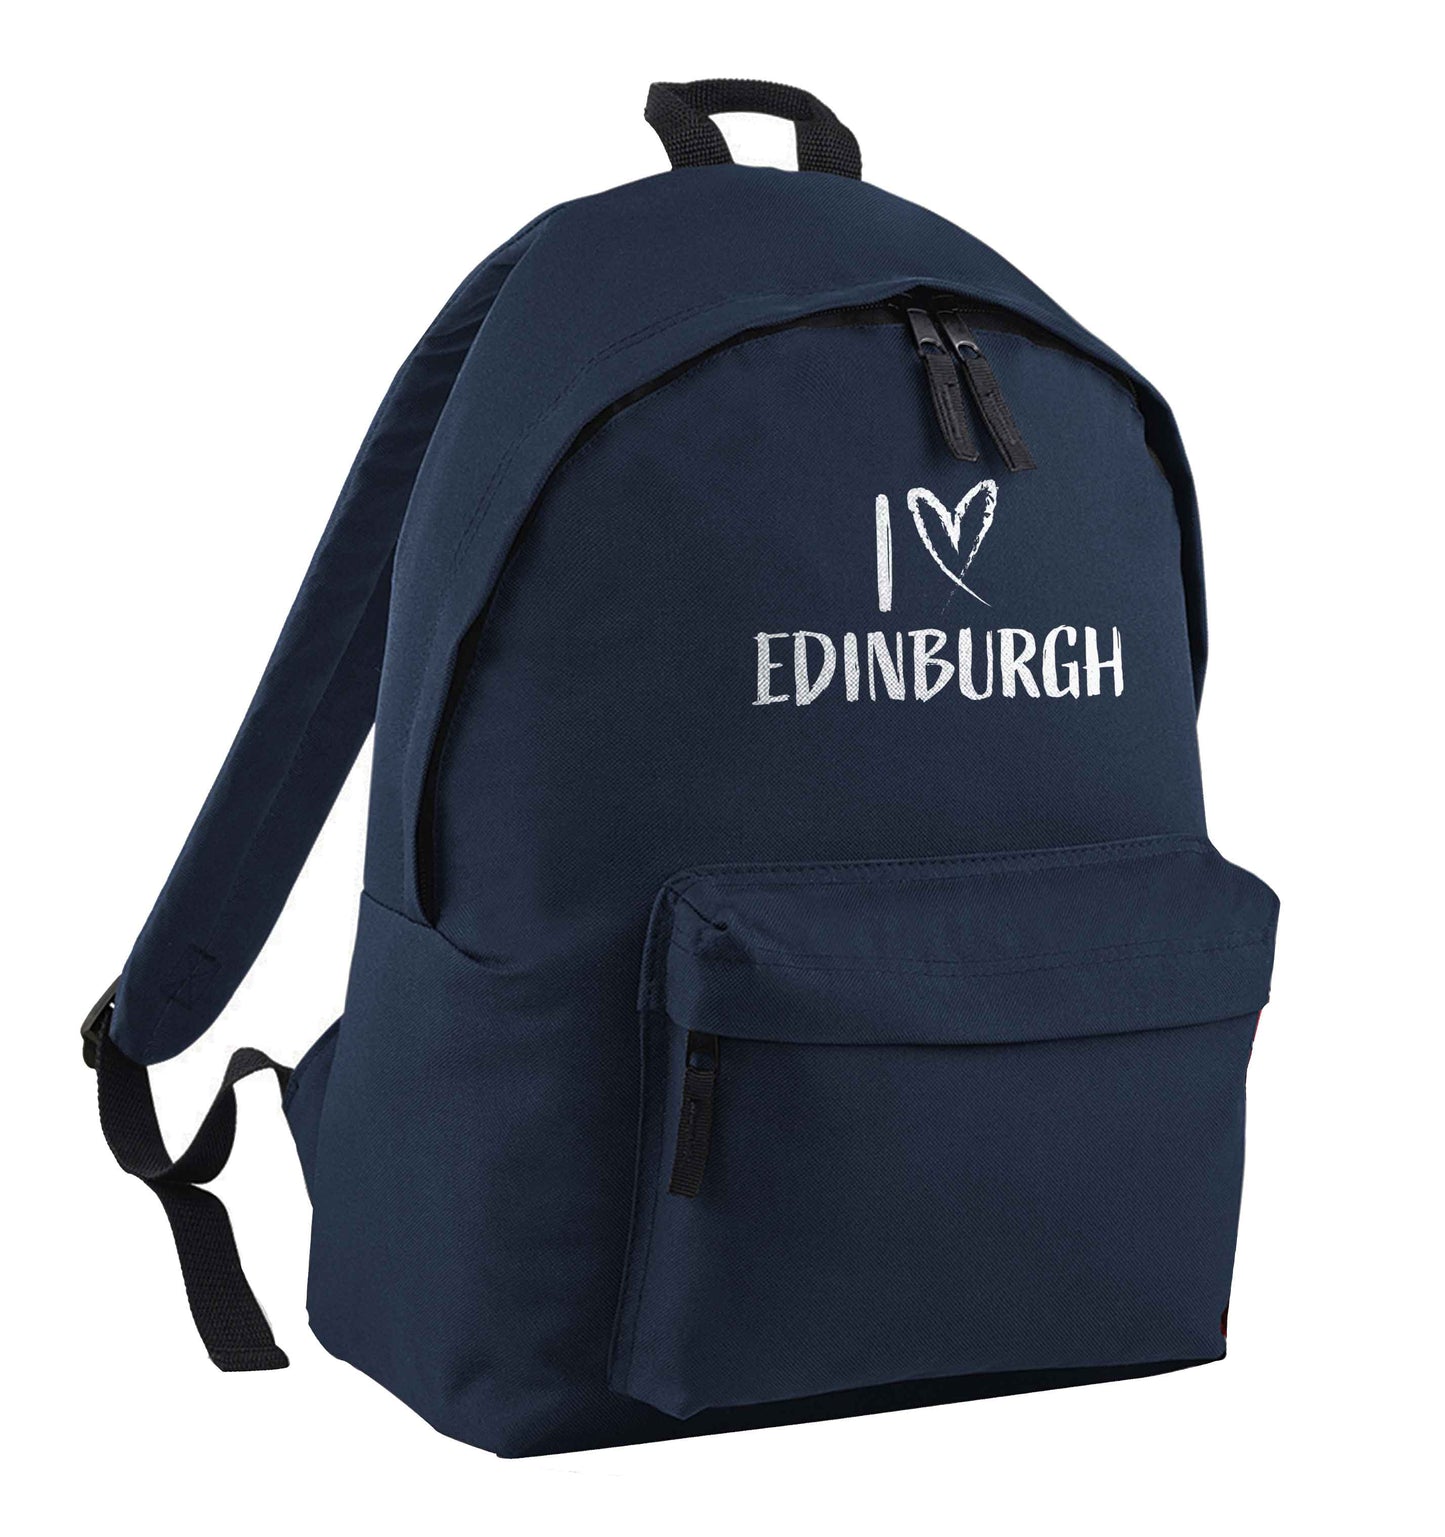 I love Edinburgh navy adults backpack